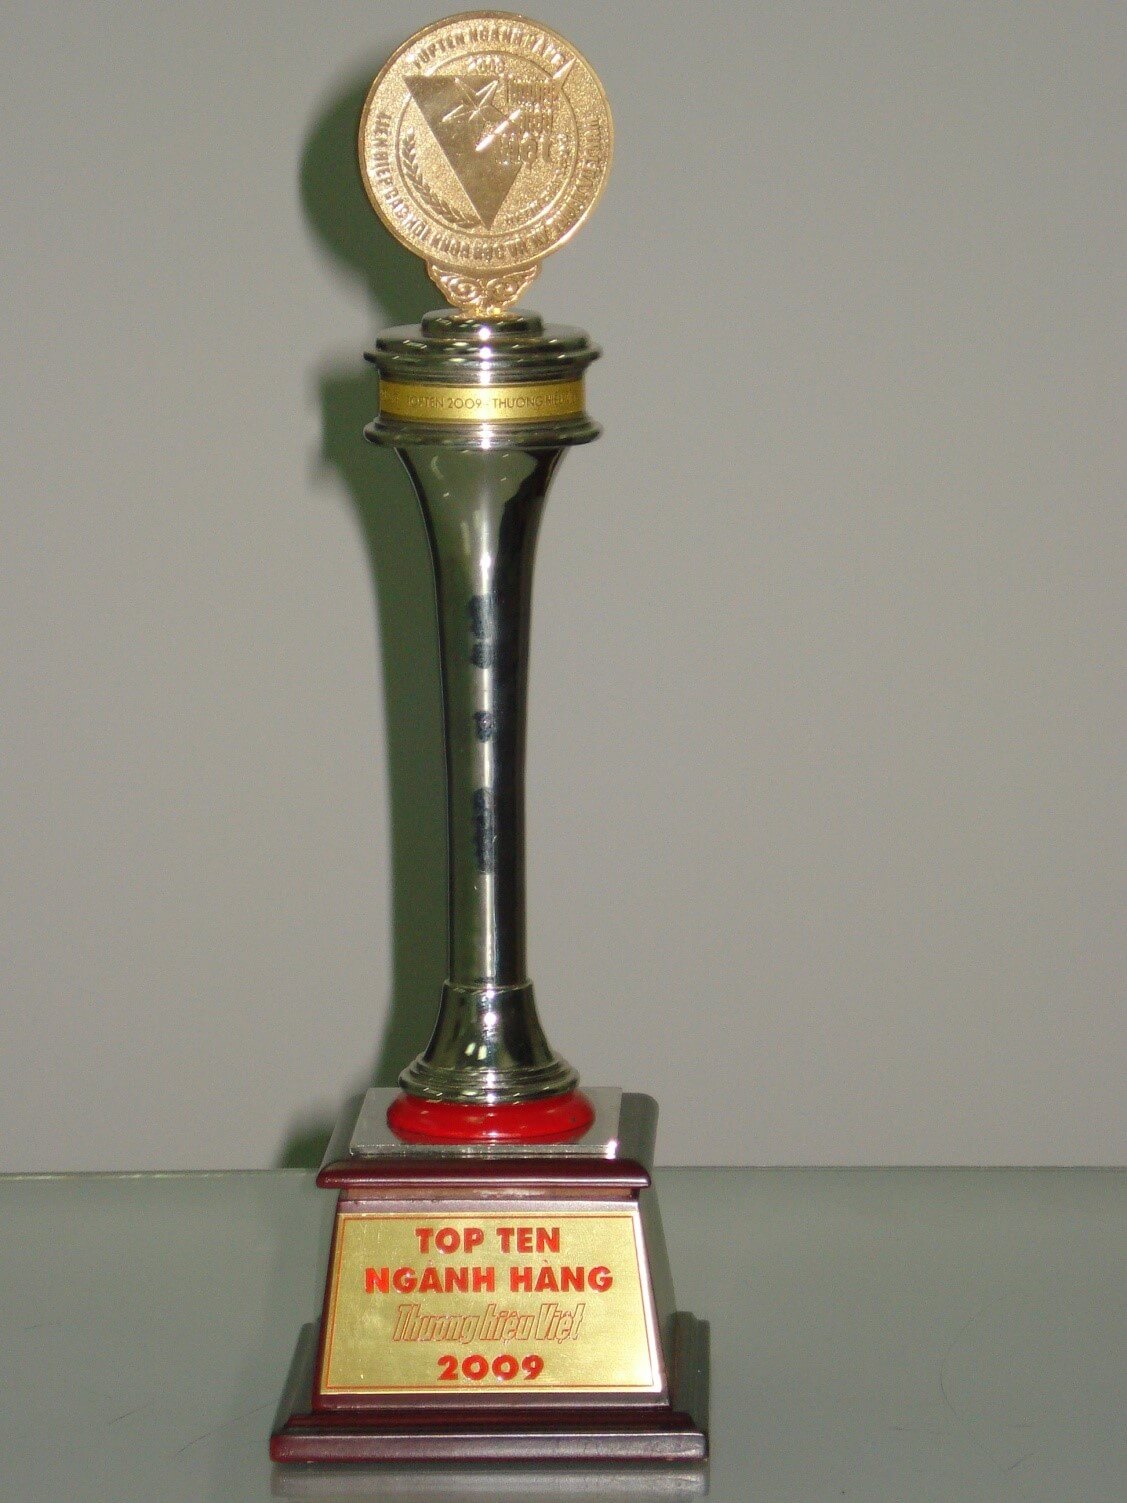 Won the Golden Cup of "Top 10 Vietnamese brands in 2009"